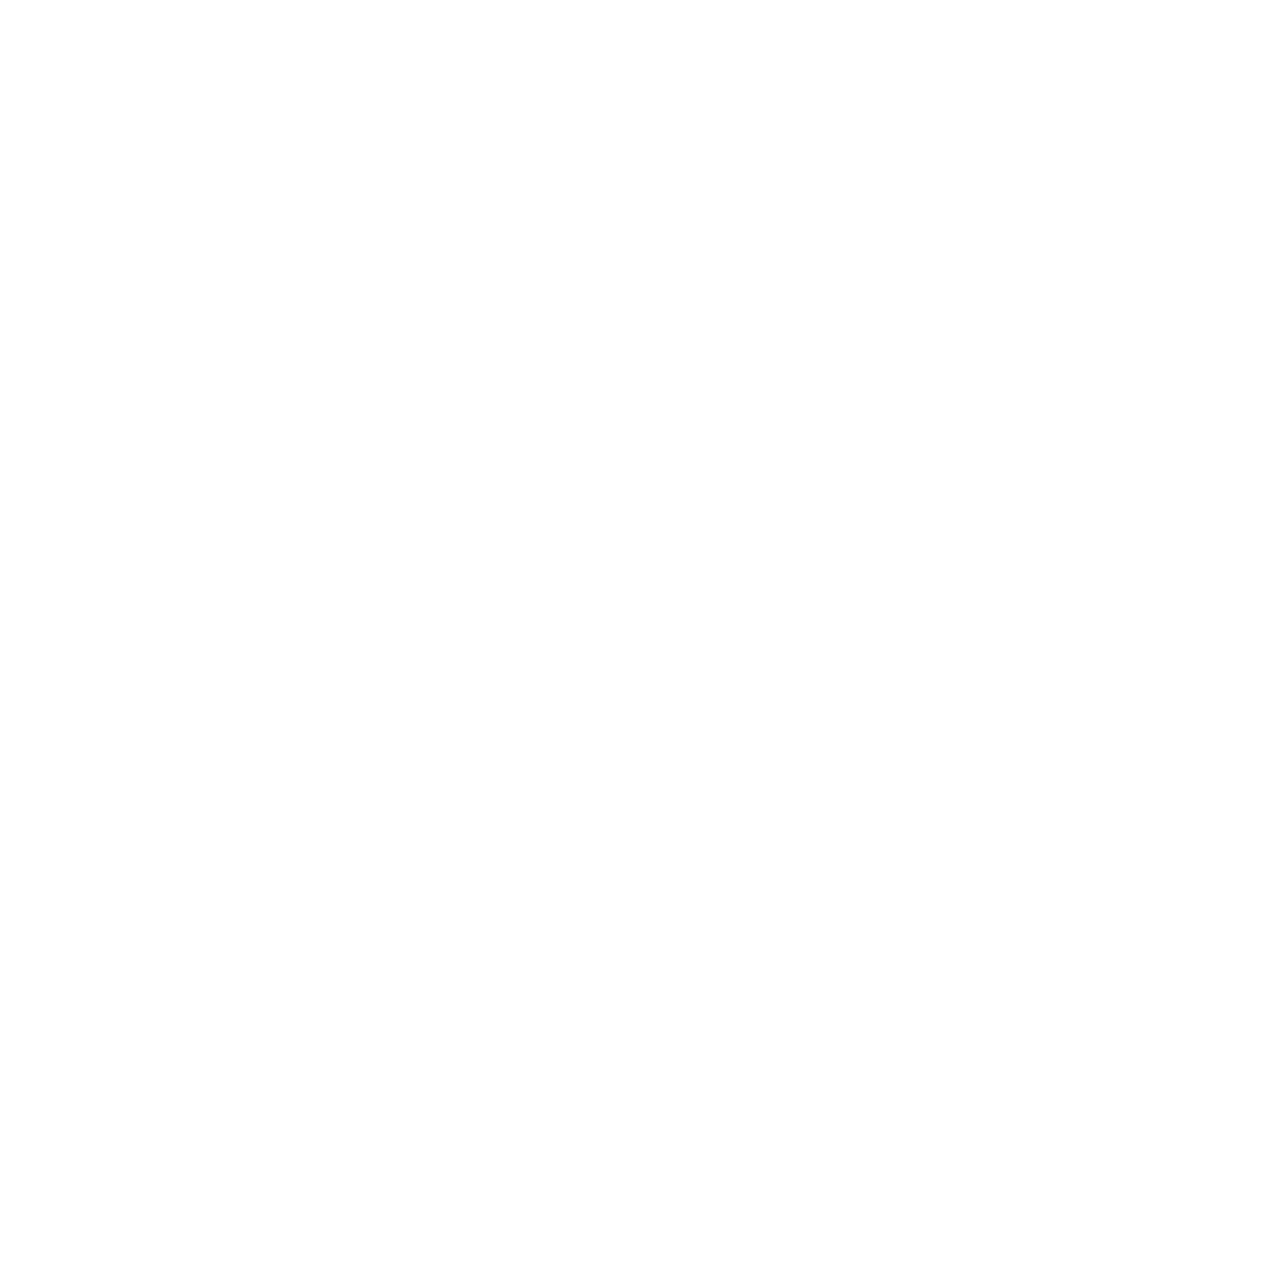 cphi-china-pmec-logo